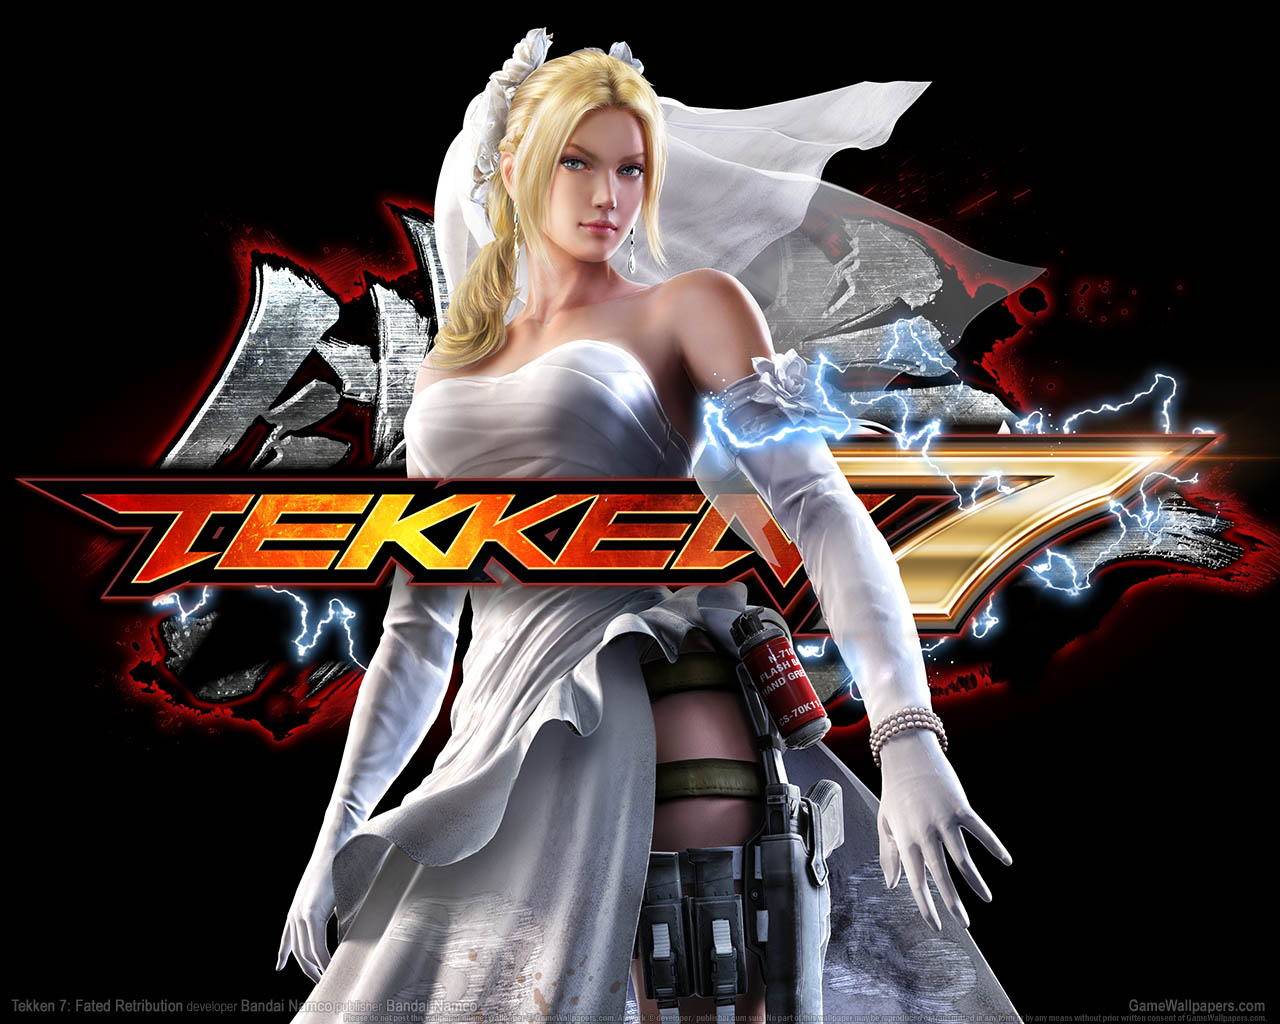 Tekken 7: Fated Retribution fond d'cran 01 1280x1024